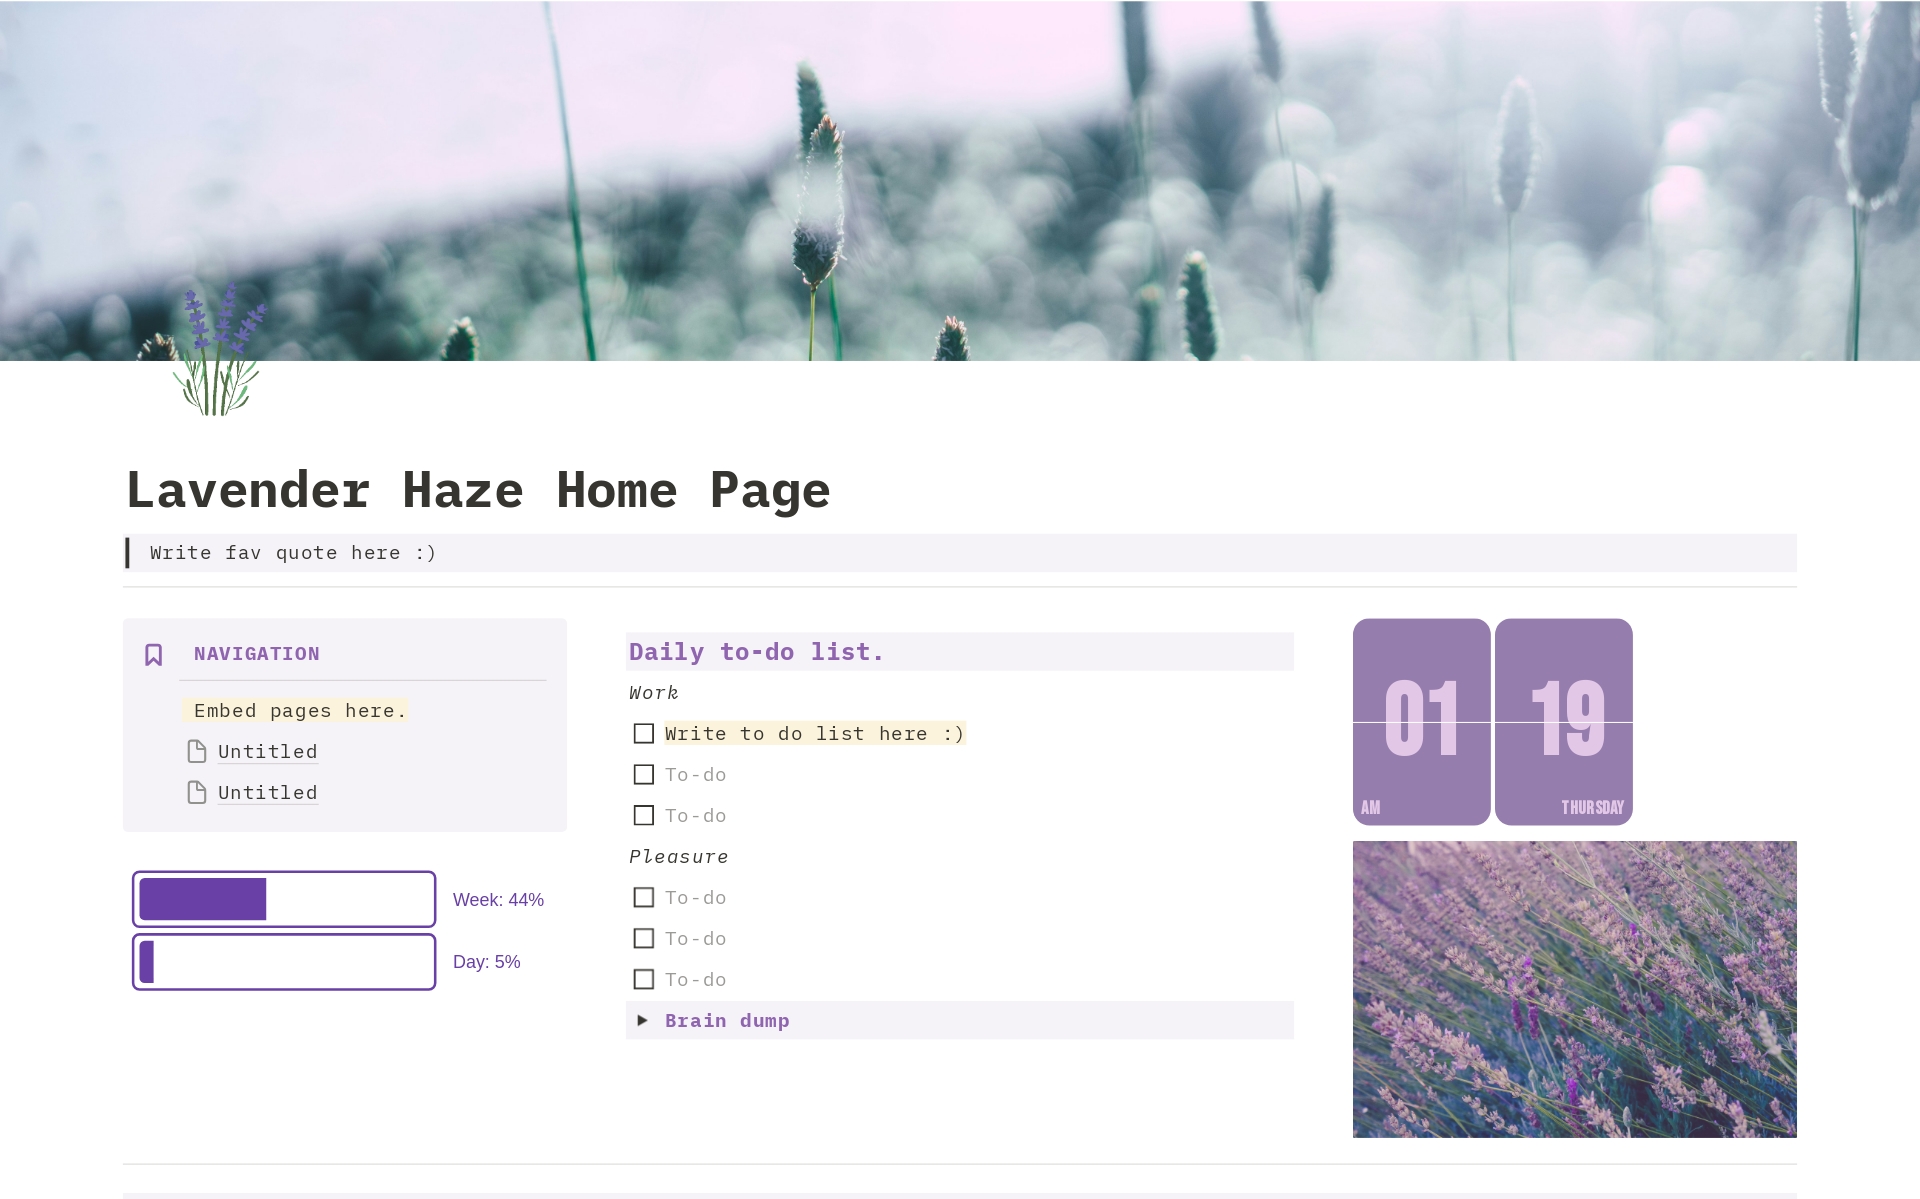 Uma prévia do modelo para Lavender Haze Home Page